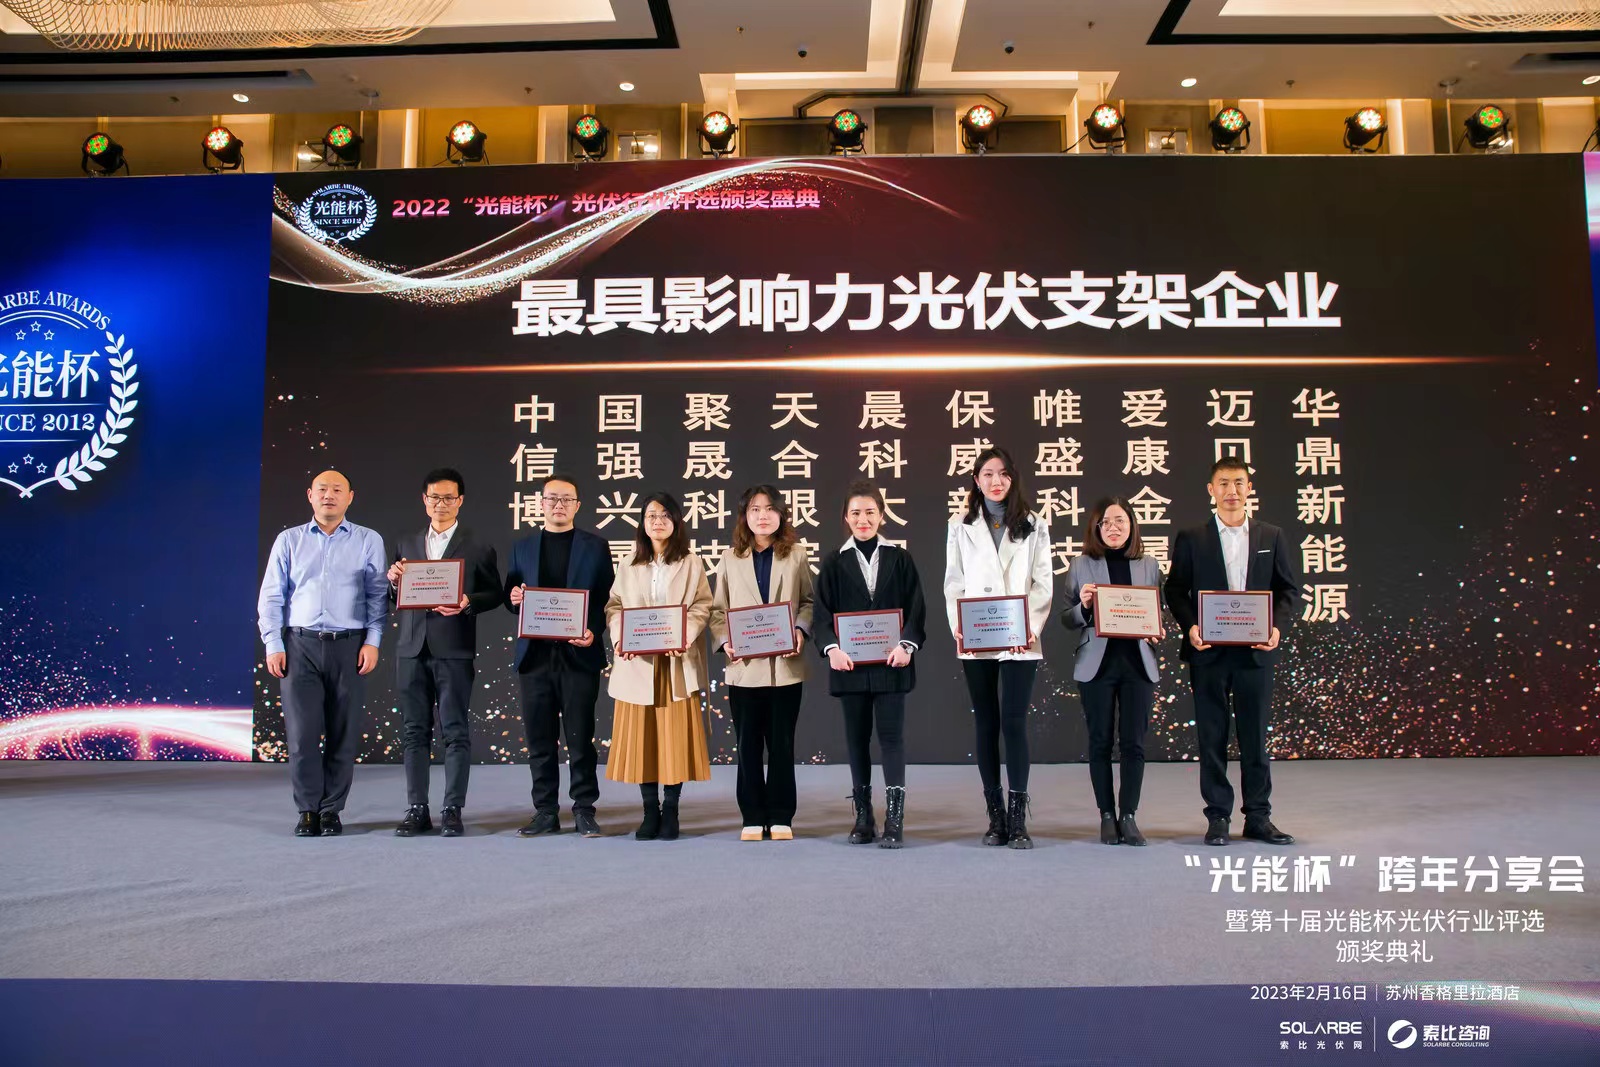 ¡Felicidades!Shanghai CHIKO ganó la empresa de soporte solar más influyente en 2022